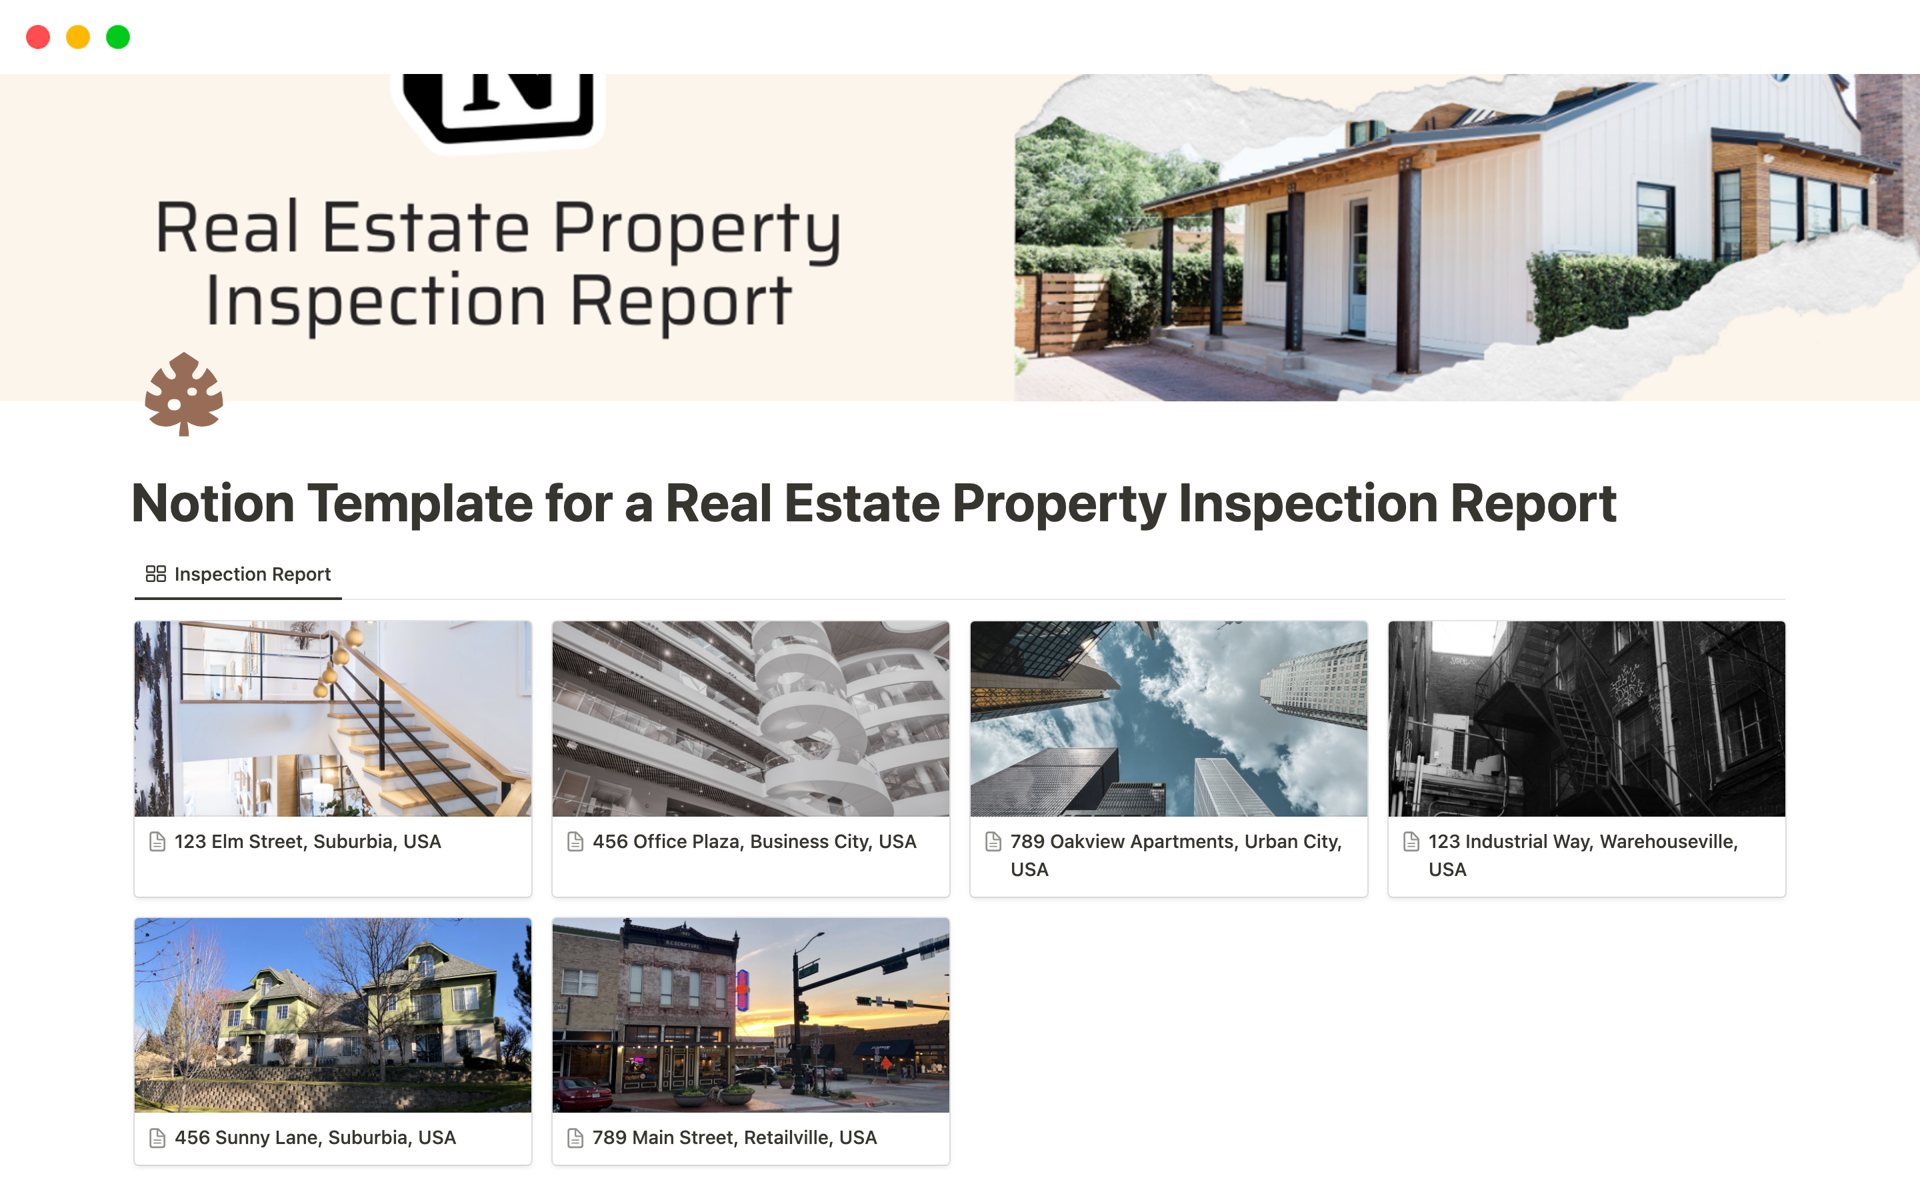 Uma prévia do modelo para Real Estate Property Inspection Report